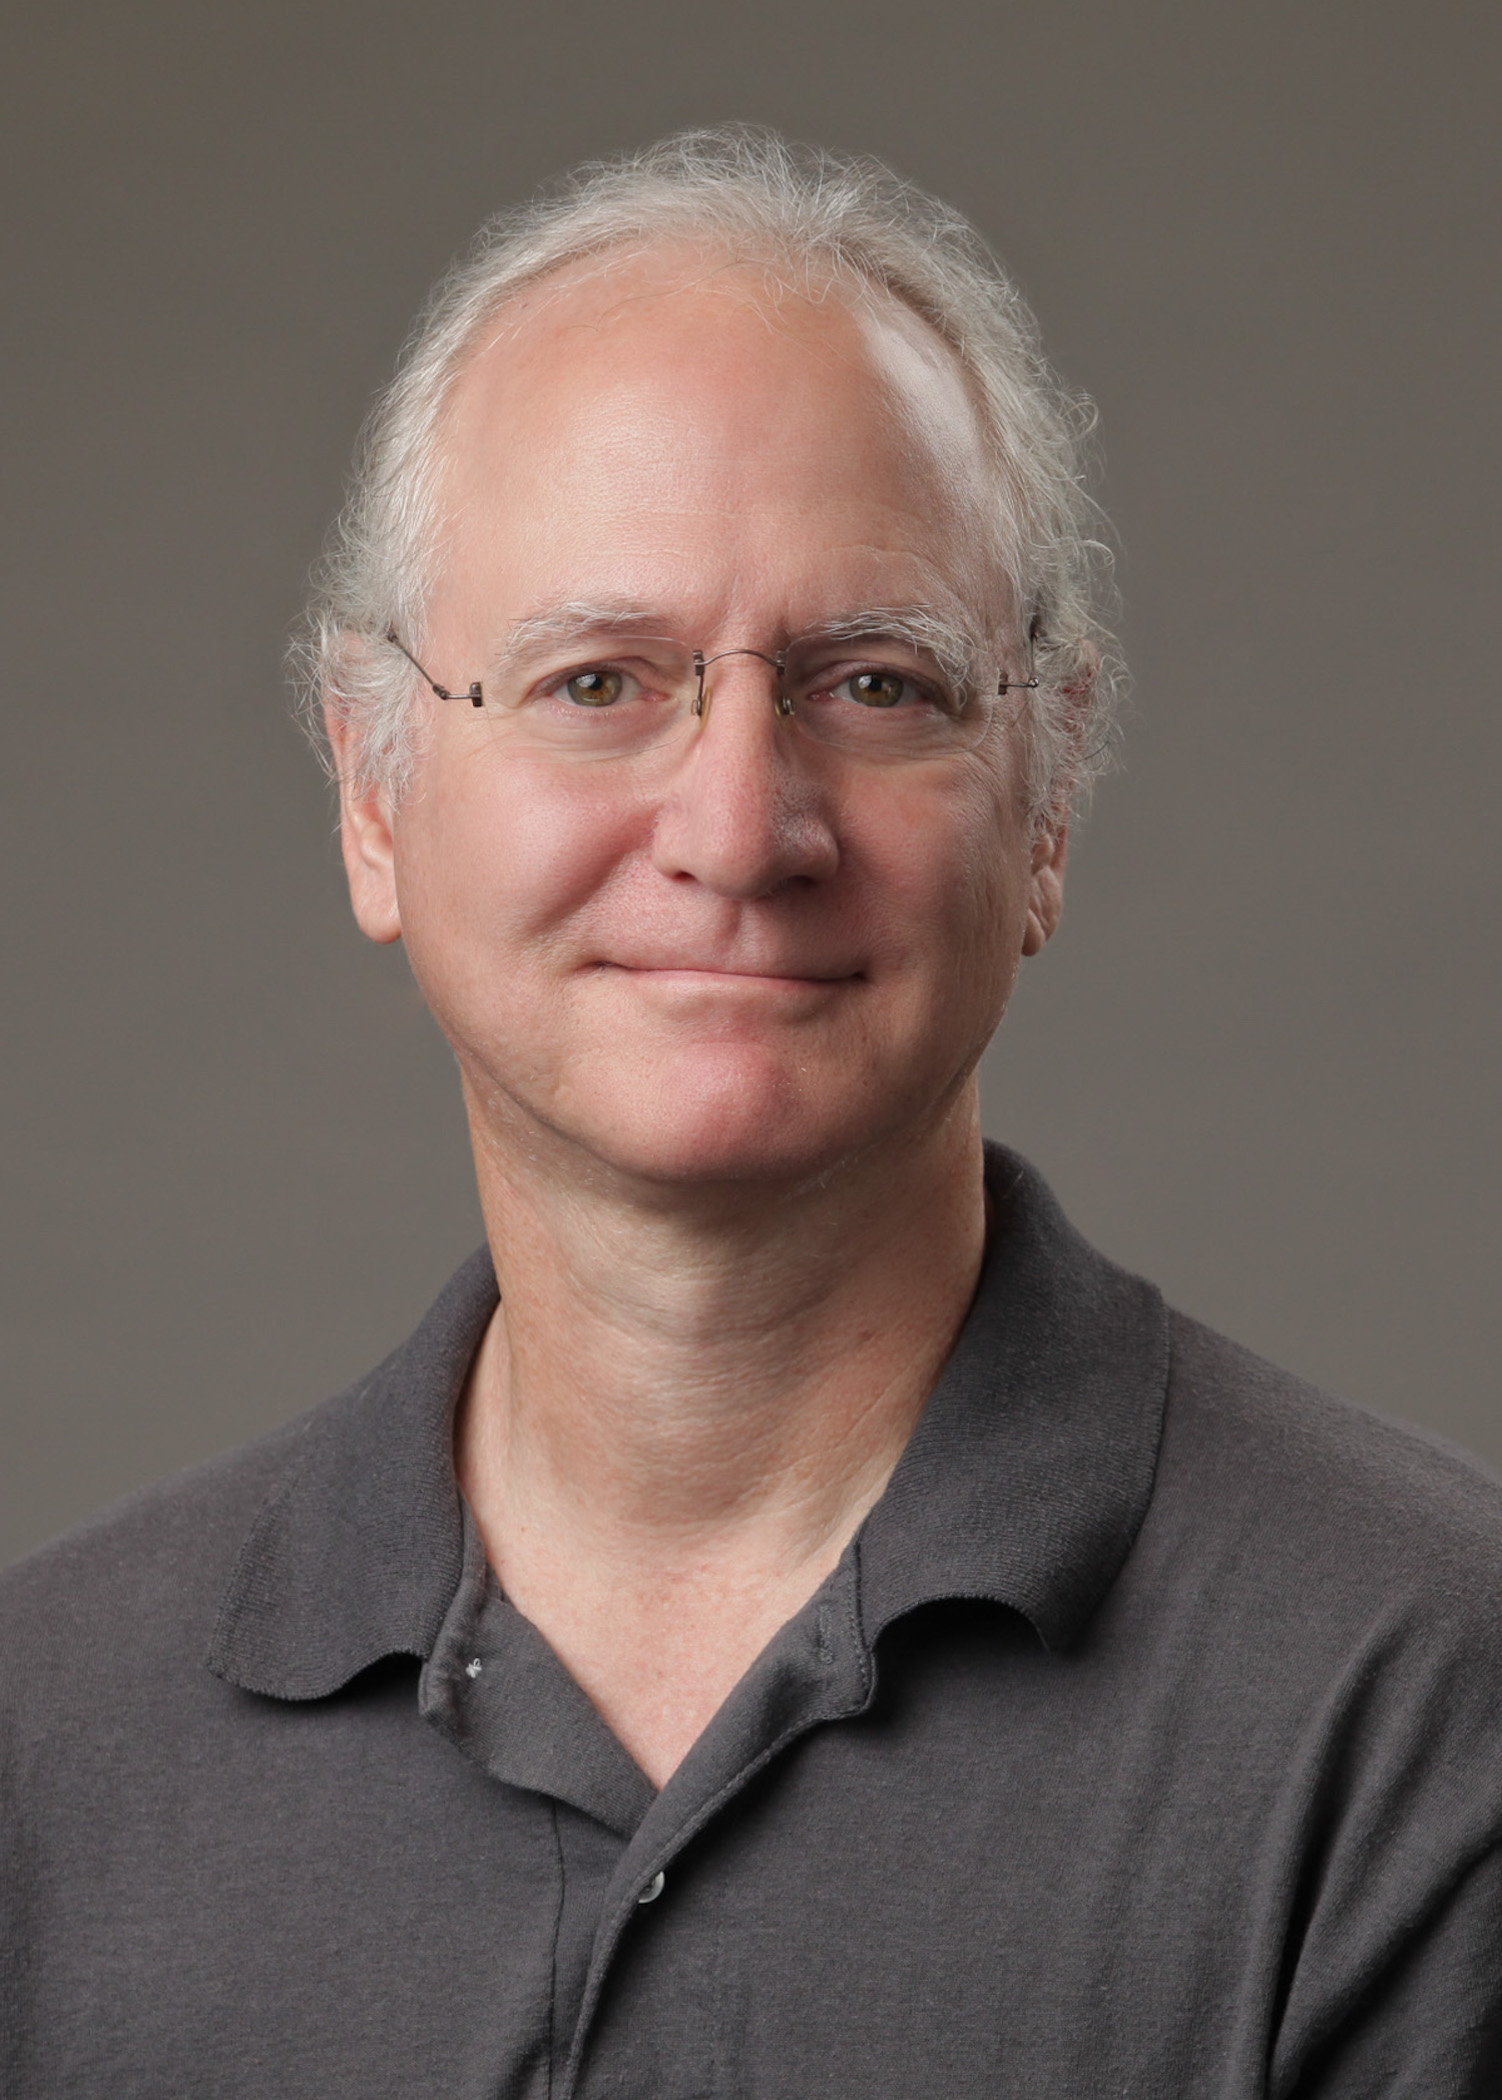 Shawn Hochman, PhD, headshot image